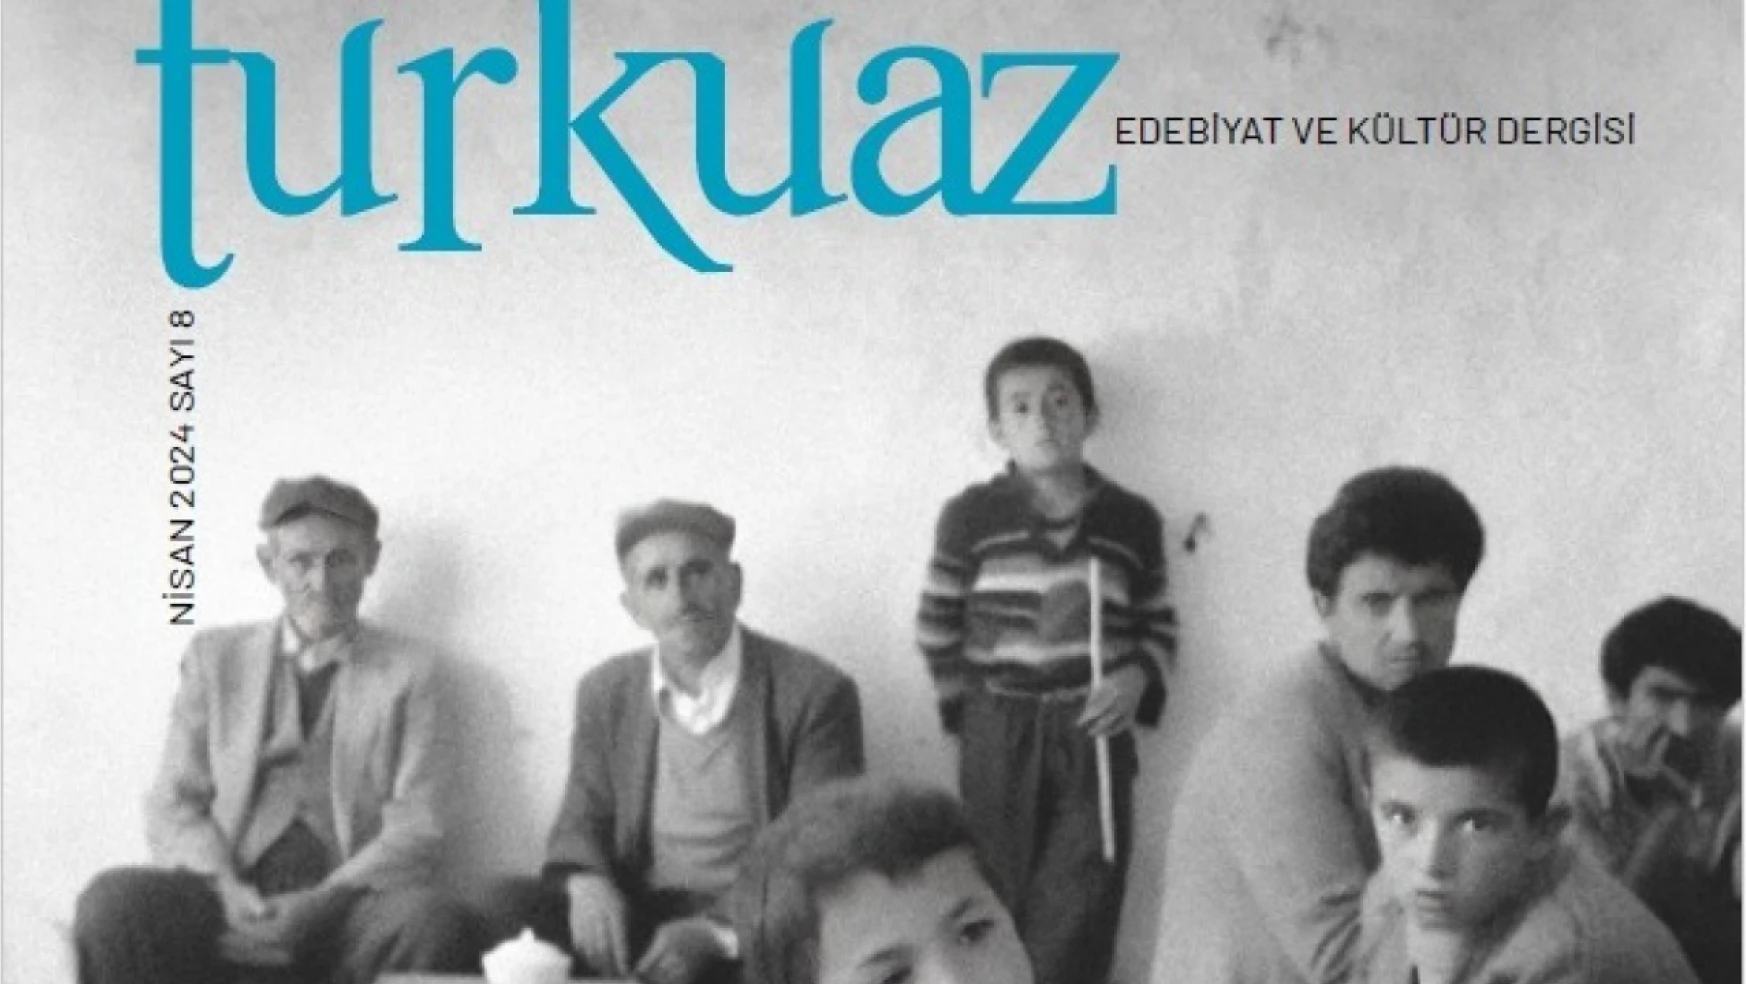 Turkuaz Edebiyat ve Kültür Dergisi 'Van'ın kurtuluşu' özel sayısı çıktı